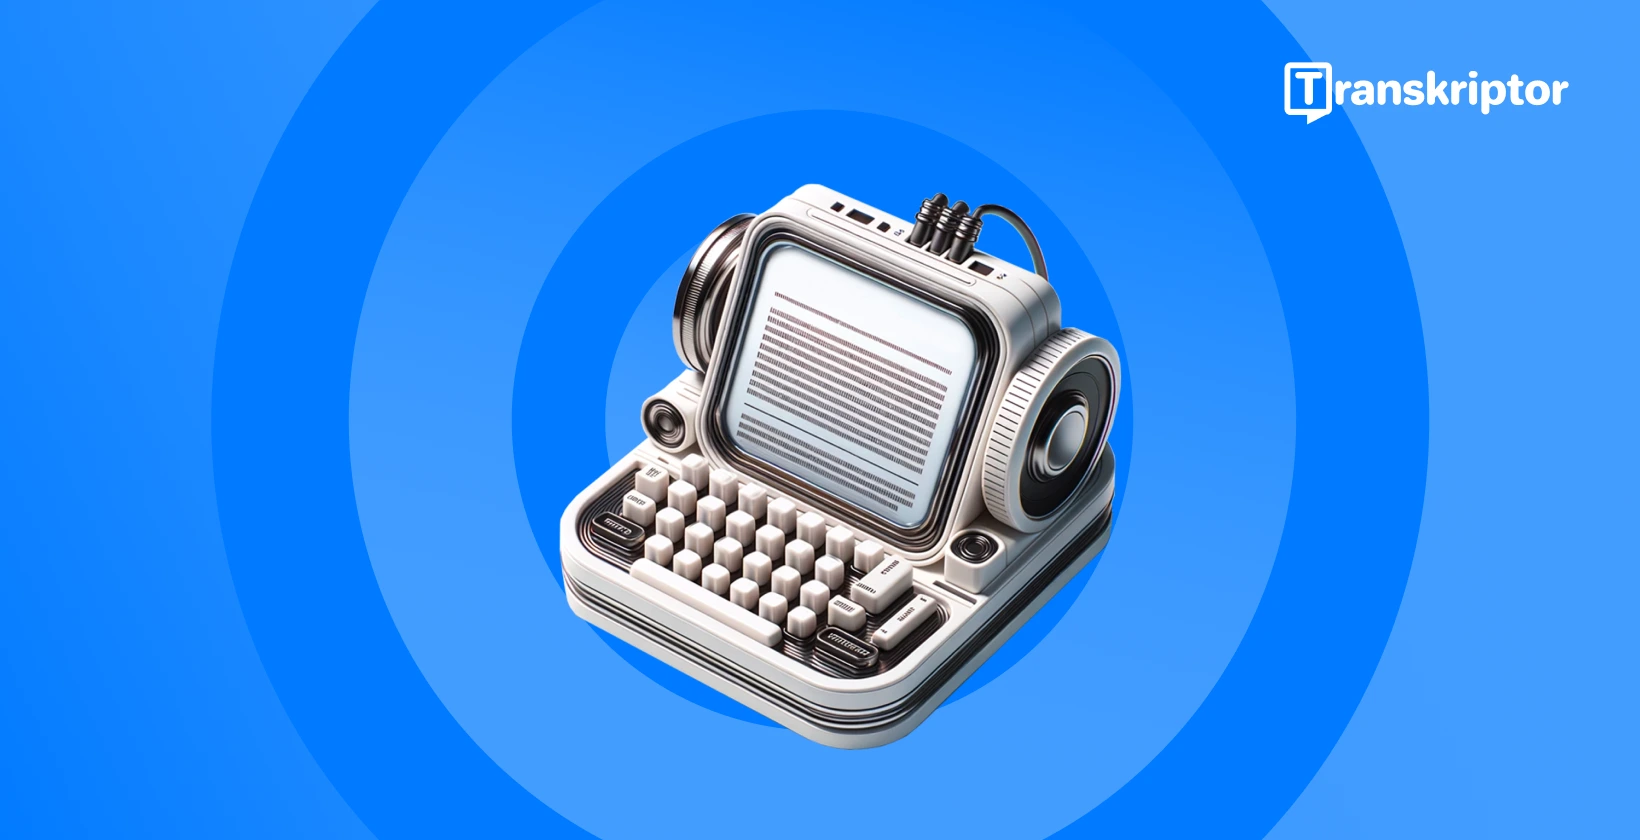 Dikteerimistarkvara Windows kasutajatele vintage-mikrofoni ja kirjutusmasinaga, mis sümboliseerib häälkirjutamist.